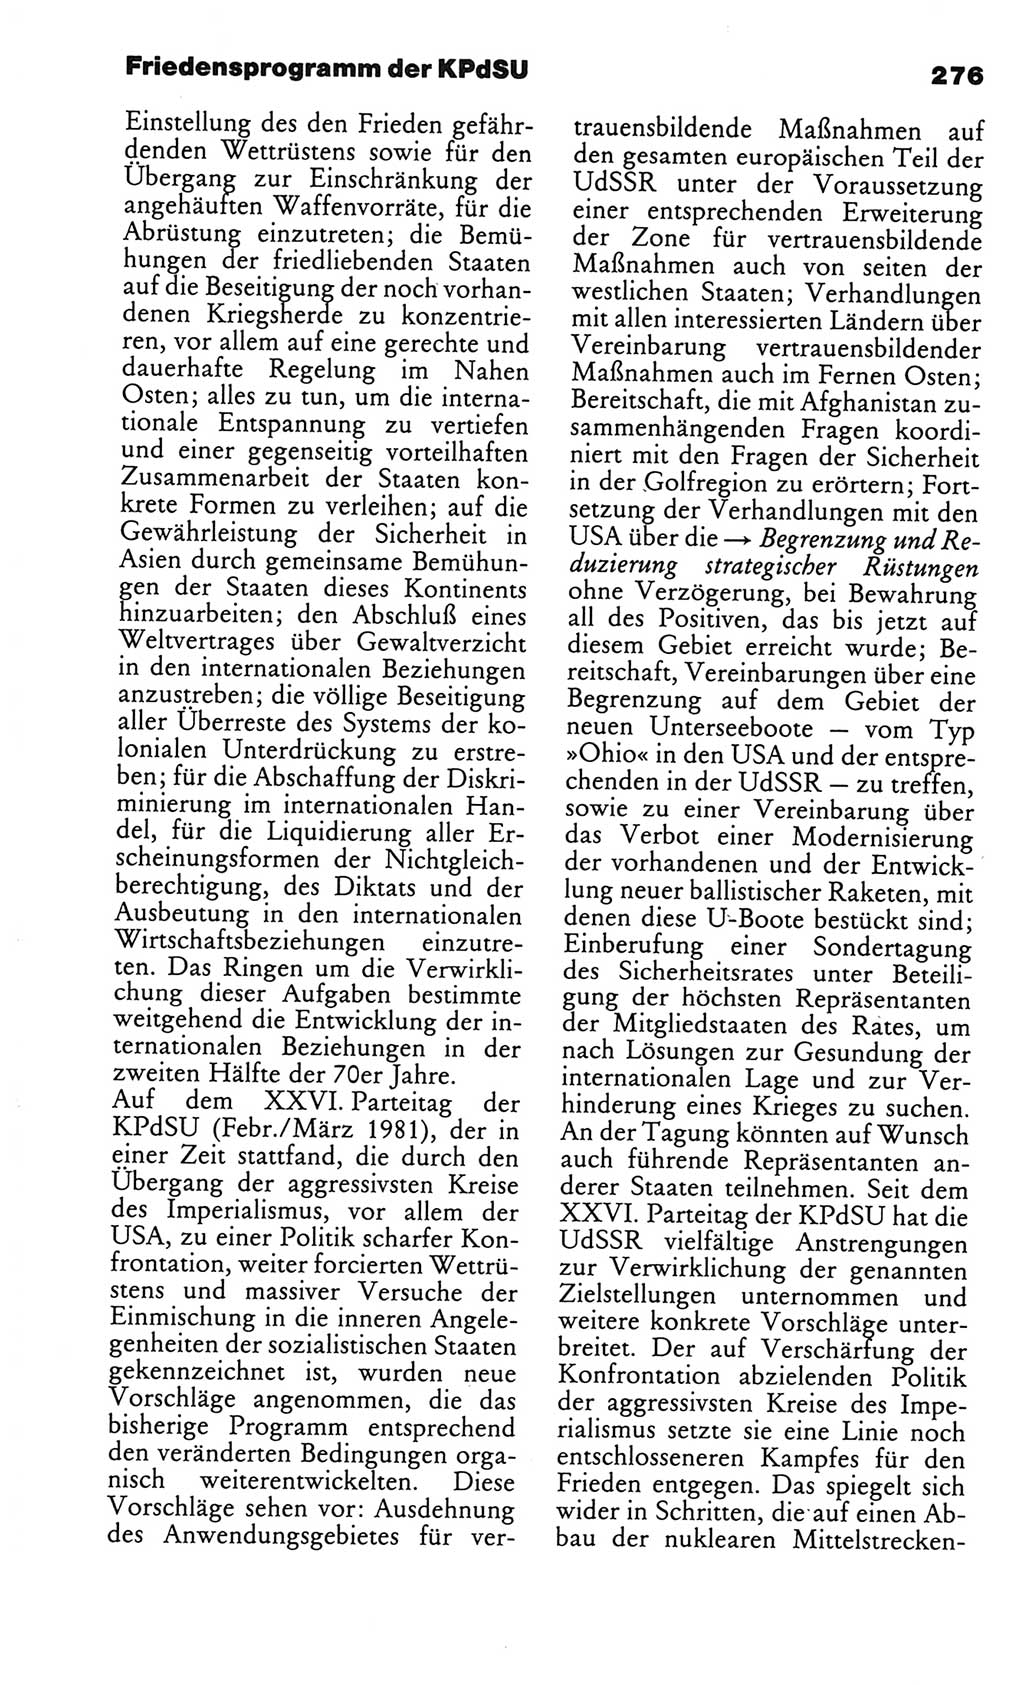 Kleines politisches Wörterbuch [Deutsche Demokratische Republik (DDR)] 1986, Seite 276 (Kl. pol. Wb. DDR 1986, S. 276)